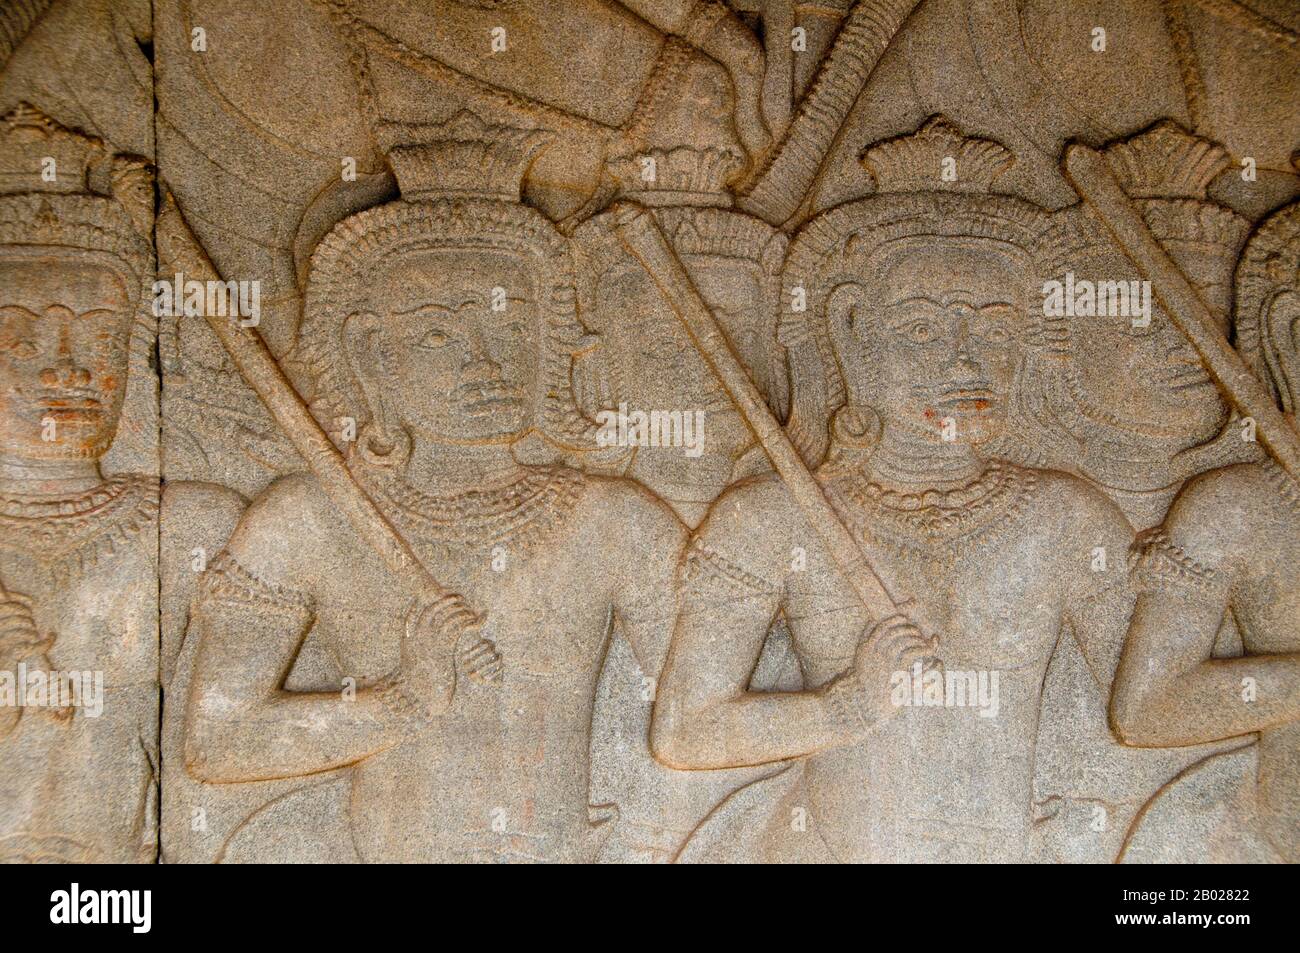 Angkor Wat wurde für König Suryavarman II (regierte 1113-50) im frühen 12. Jahrhundert als sein Staatstempel und Hauptstadt erbaut. Als der am besten erhaltene Tempel am Standort Angkor ist er der einzige, der seit seiner Gründung ein bedeutendes religiöses Zentrum geblieben ist - zuerst Hindu, dem gott Vishnu gewidmet, dann Buddhist. Es ist das größte religiöse Gebäude der Welt. Der Tempel steht ganz oben auf dem hohen klassischen Stil der Khmer-Architektur. Es ist zu einem Symbol für Kambodscha geworden, das auf seiner Nationalflaggen erscheint, und es ist die Hauptattraktion des Landes für Besucher. Angkor Wat vereint zwei grundlegende Pla Stockfoto